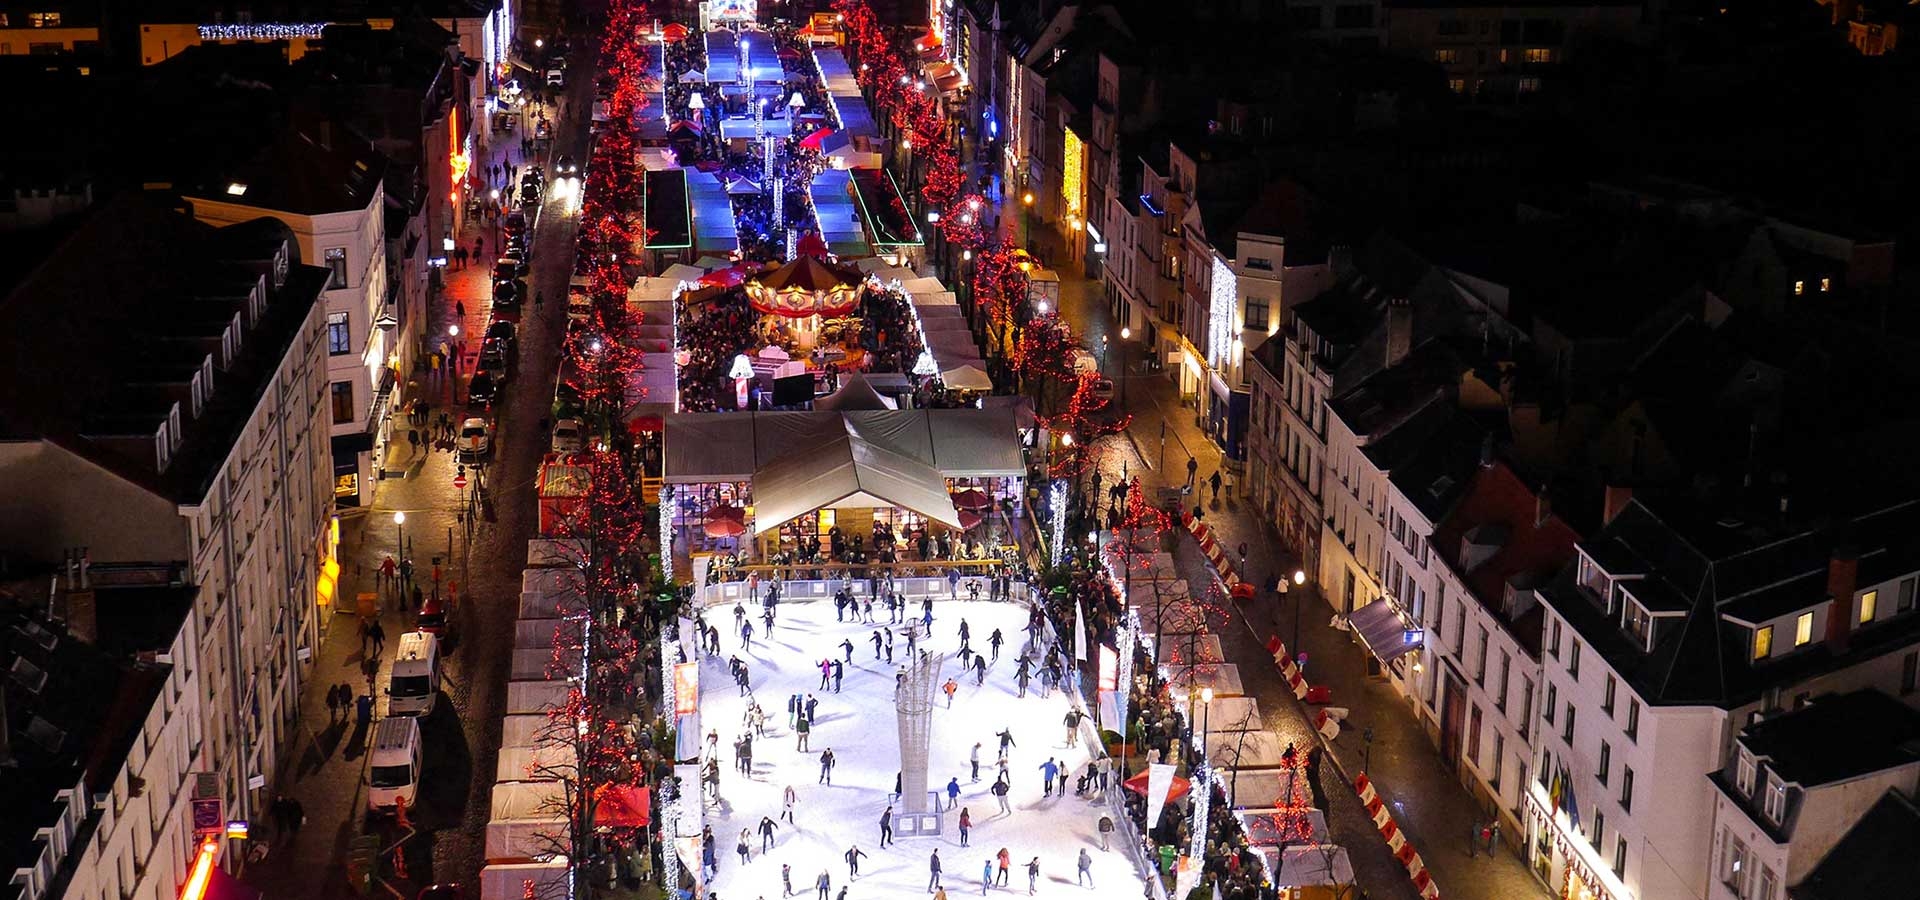 Brussel heeft ook een prachtige kerstmarkt met schaatsbaan!